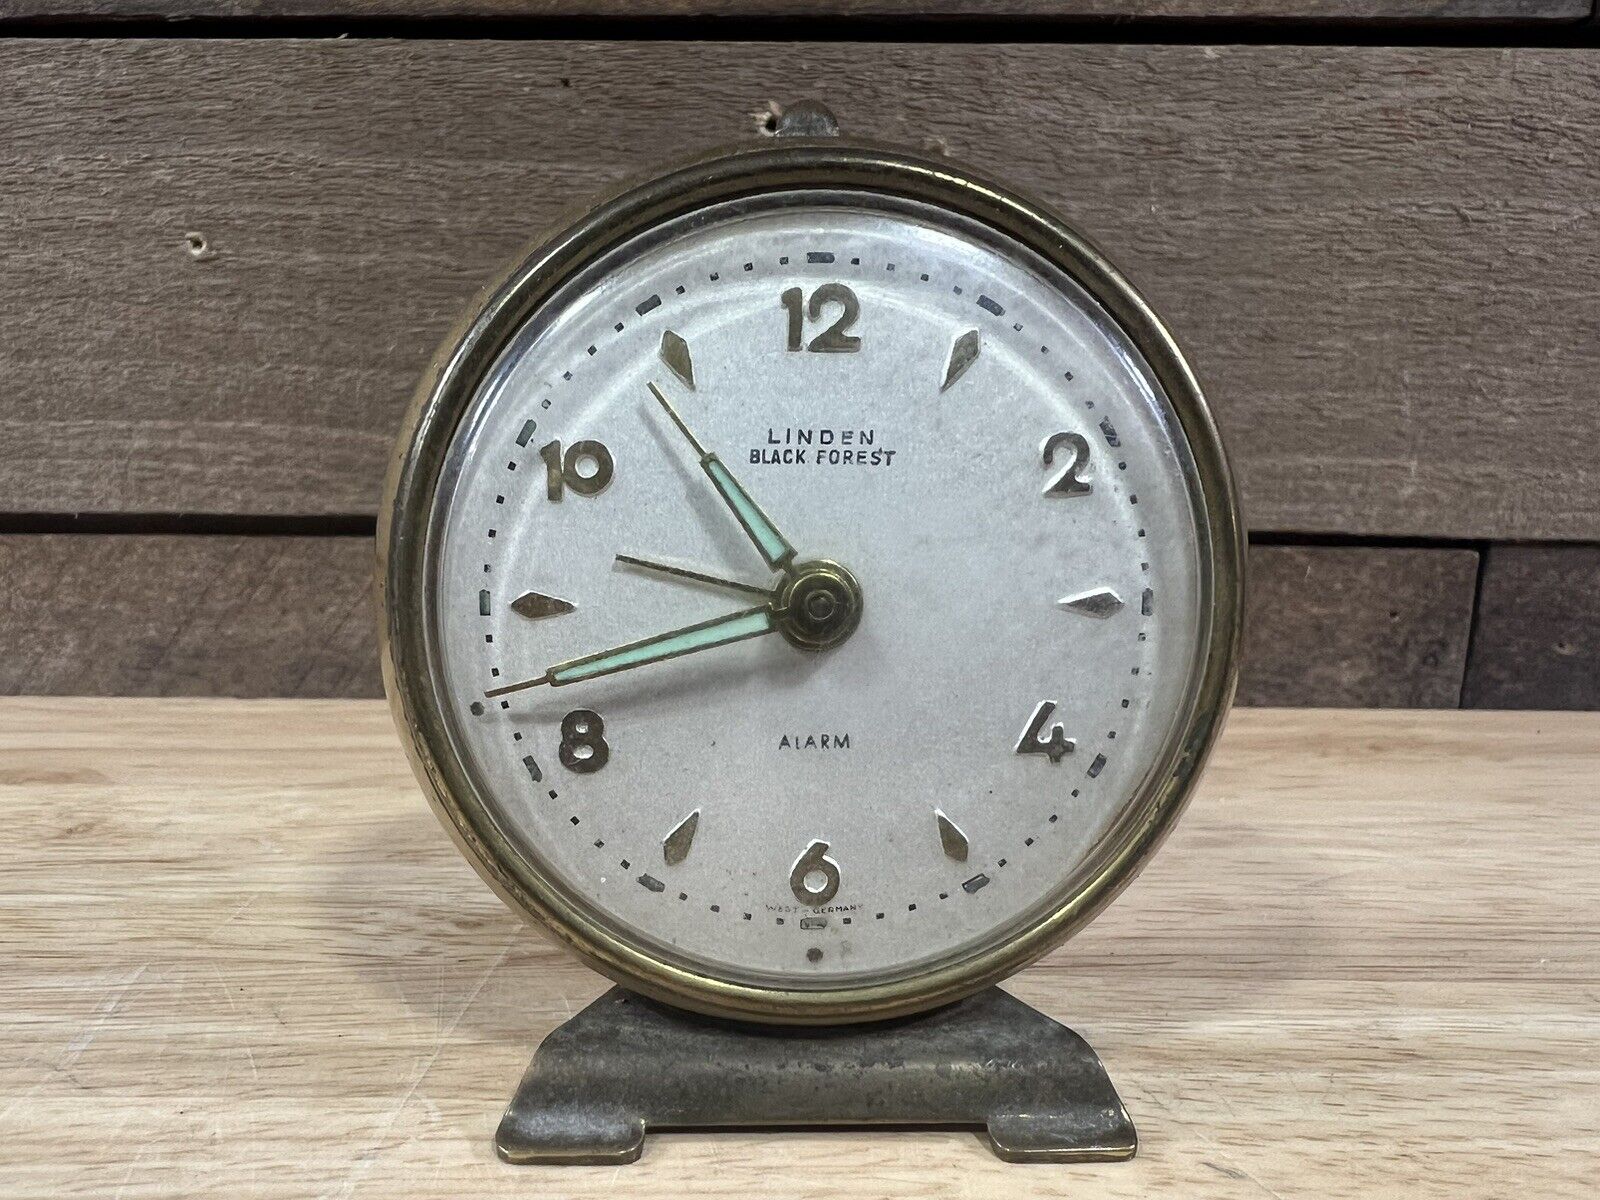 Vintage Linden Black Forest Travel Alarm Clock